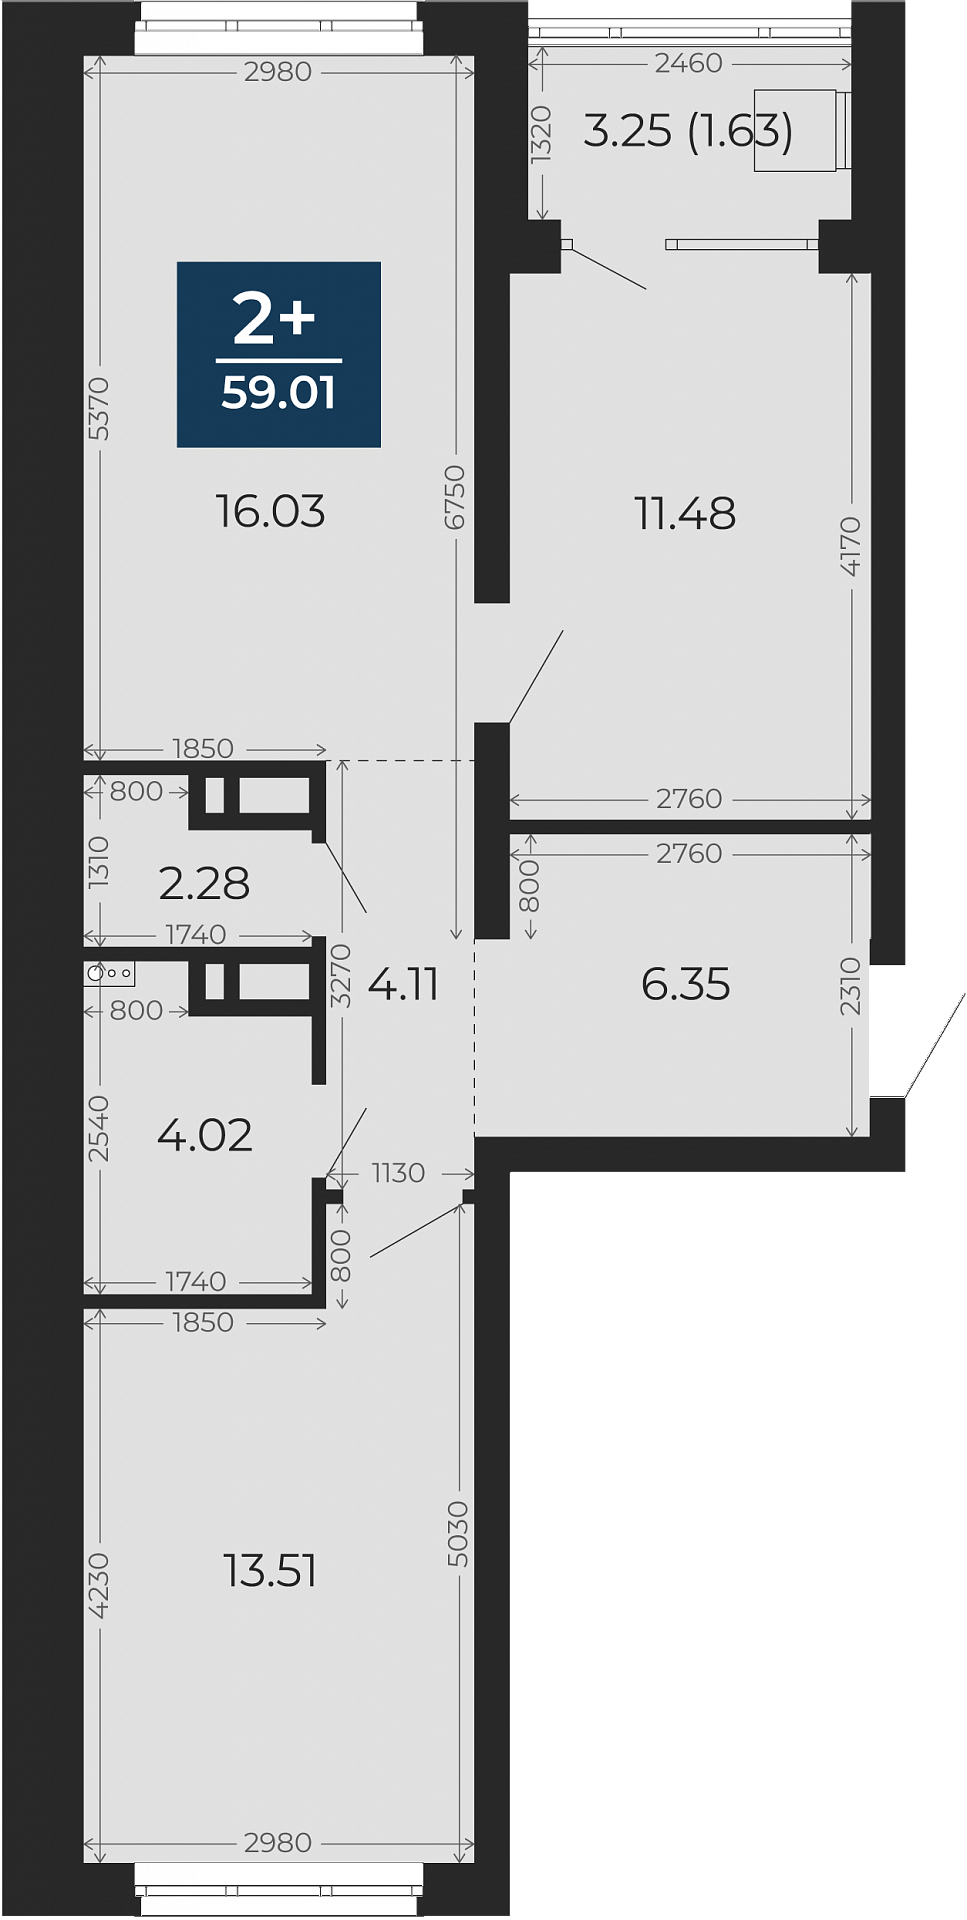 Квартира № 310, 2-комнатная, 59.01 кв. м, 7 этаж